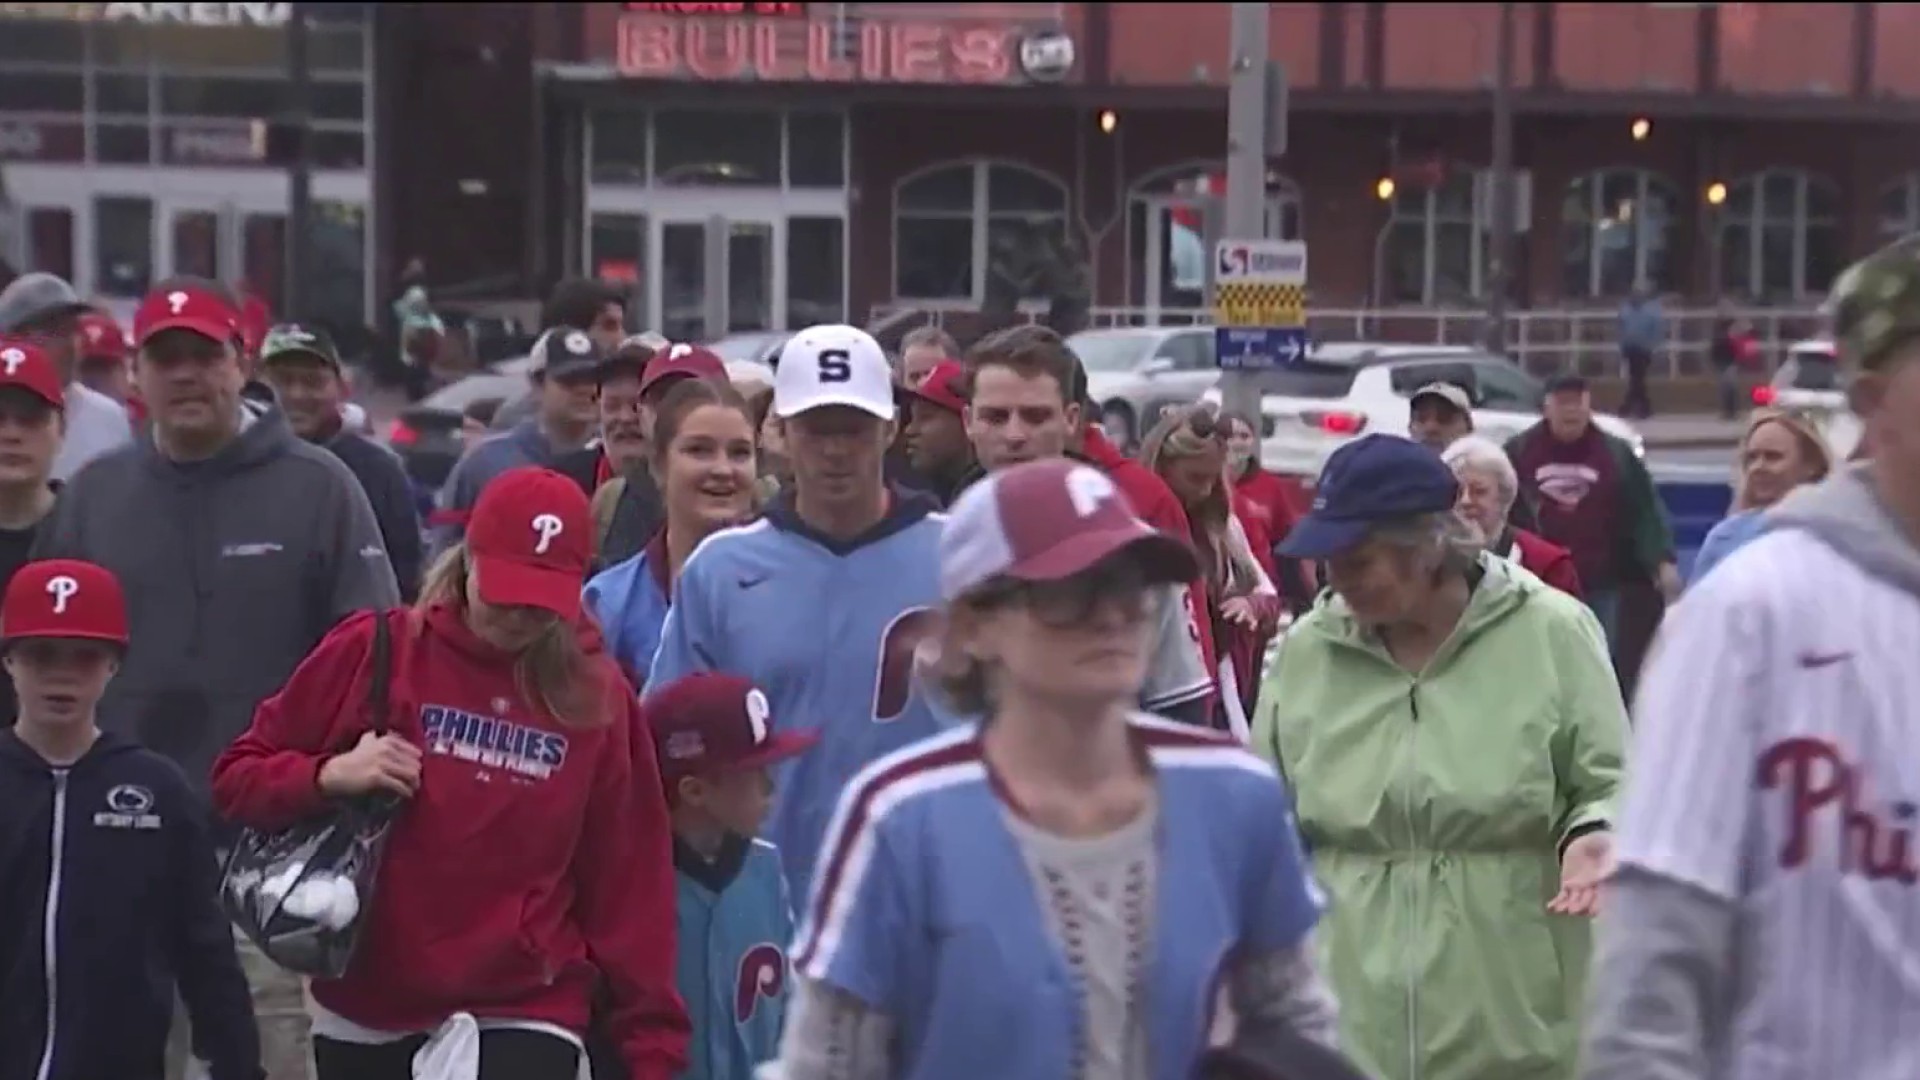 Rain or shine, Phillies fans head to Citizens Bank Park despite